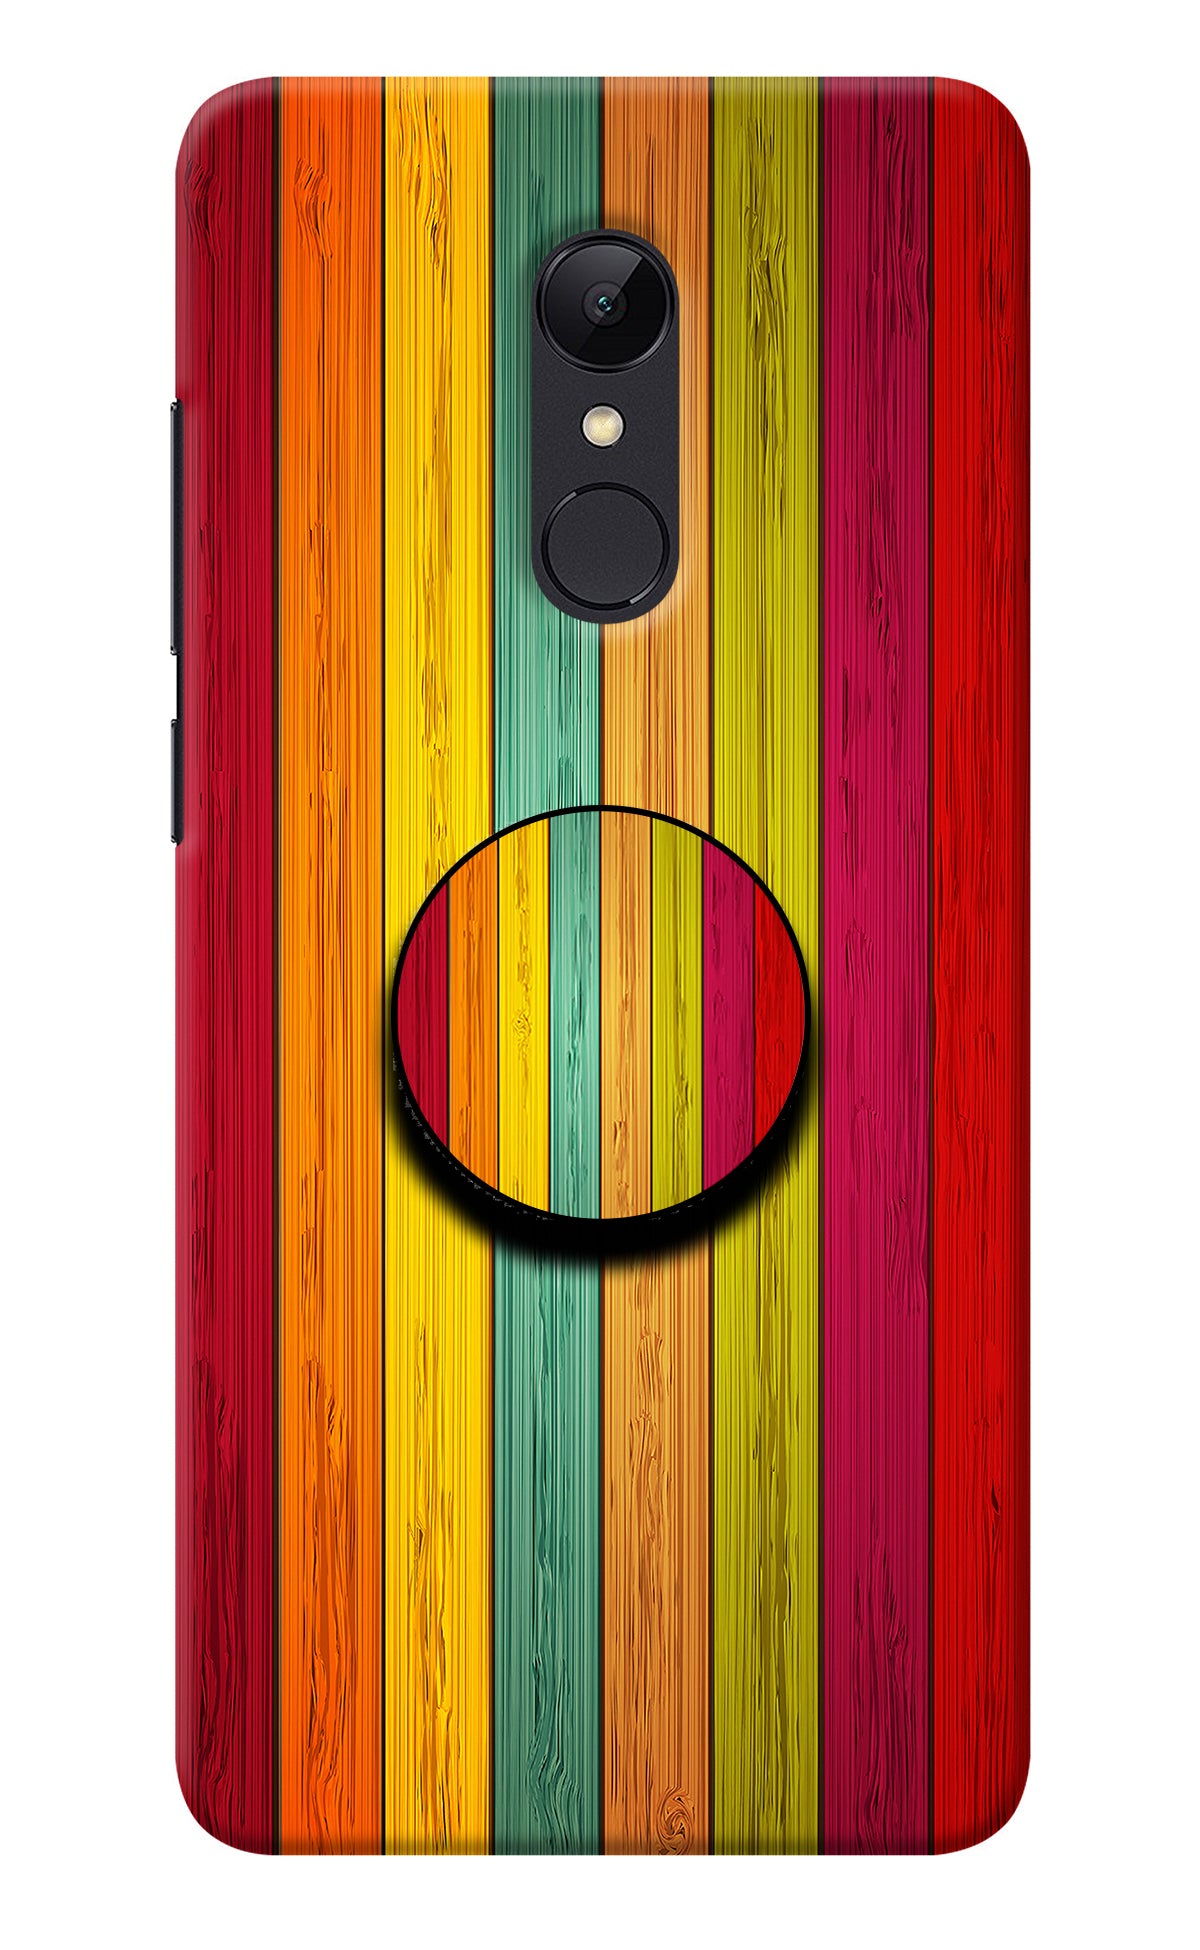 Multicolor Wooden Redmi 5 Pop Case